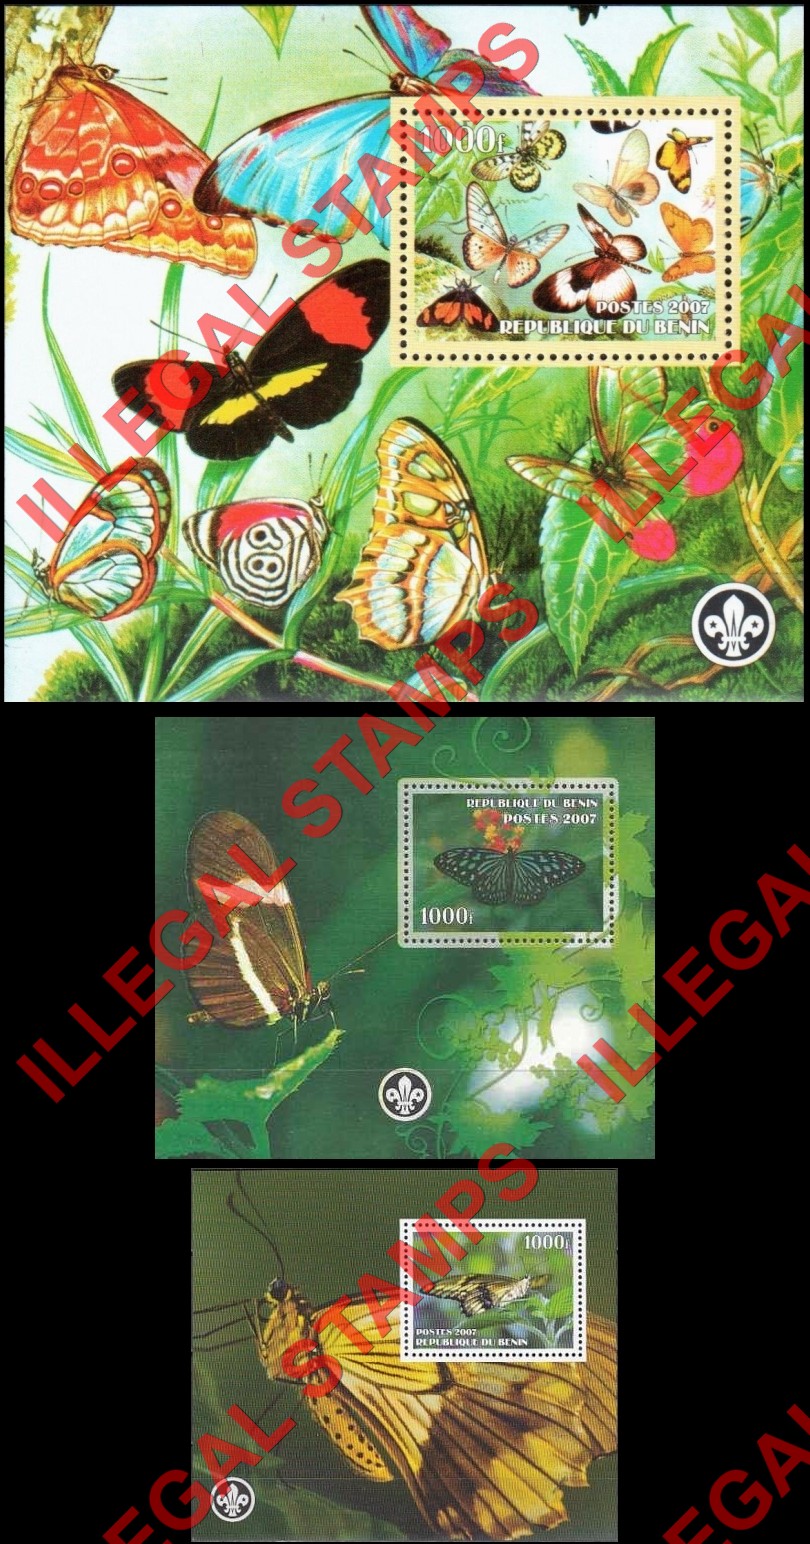 Benin 2007 Butterflies Illegal Stamp Souvenir Sheets of 1